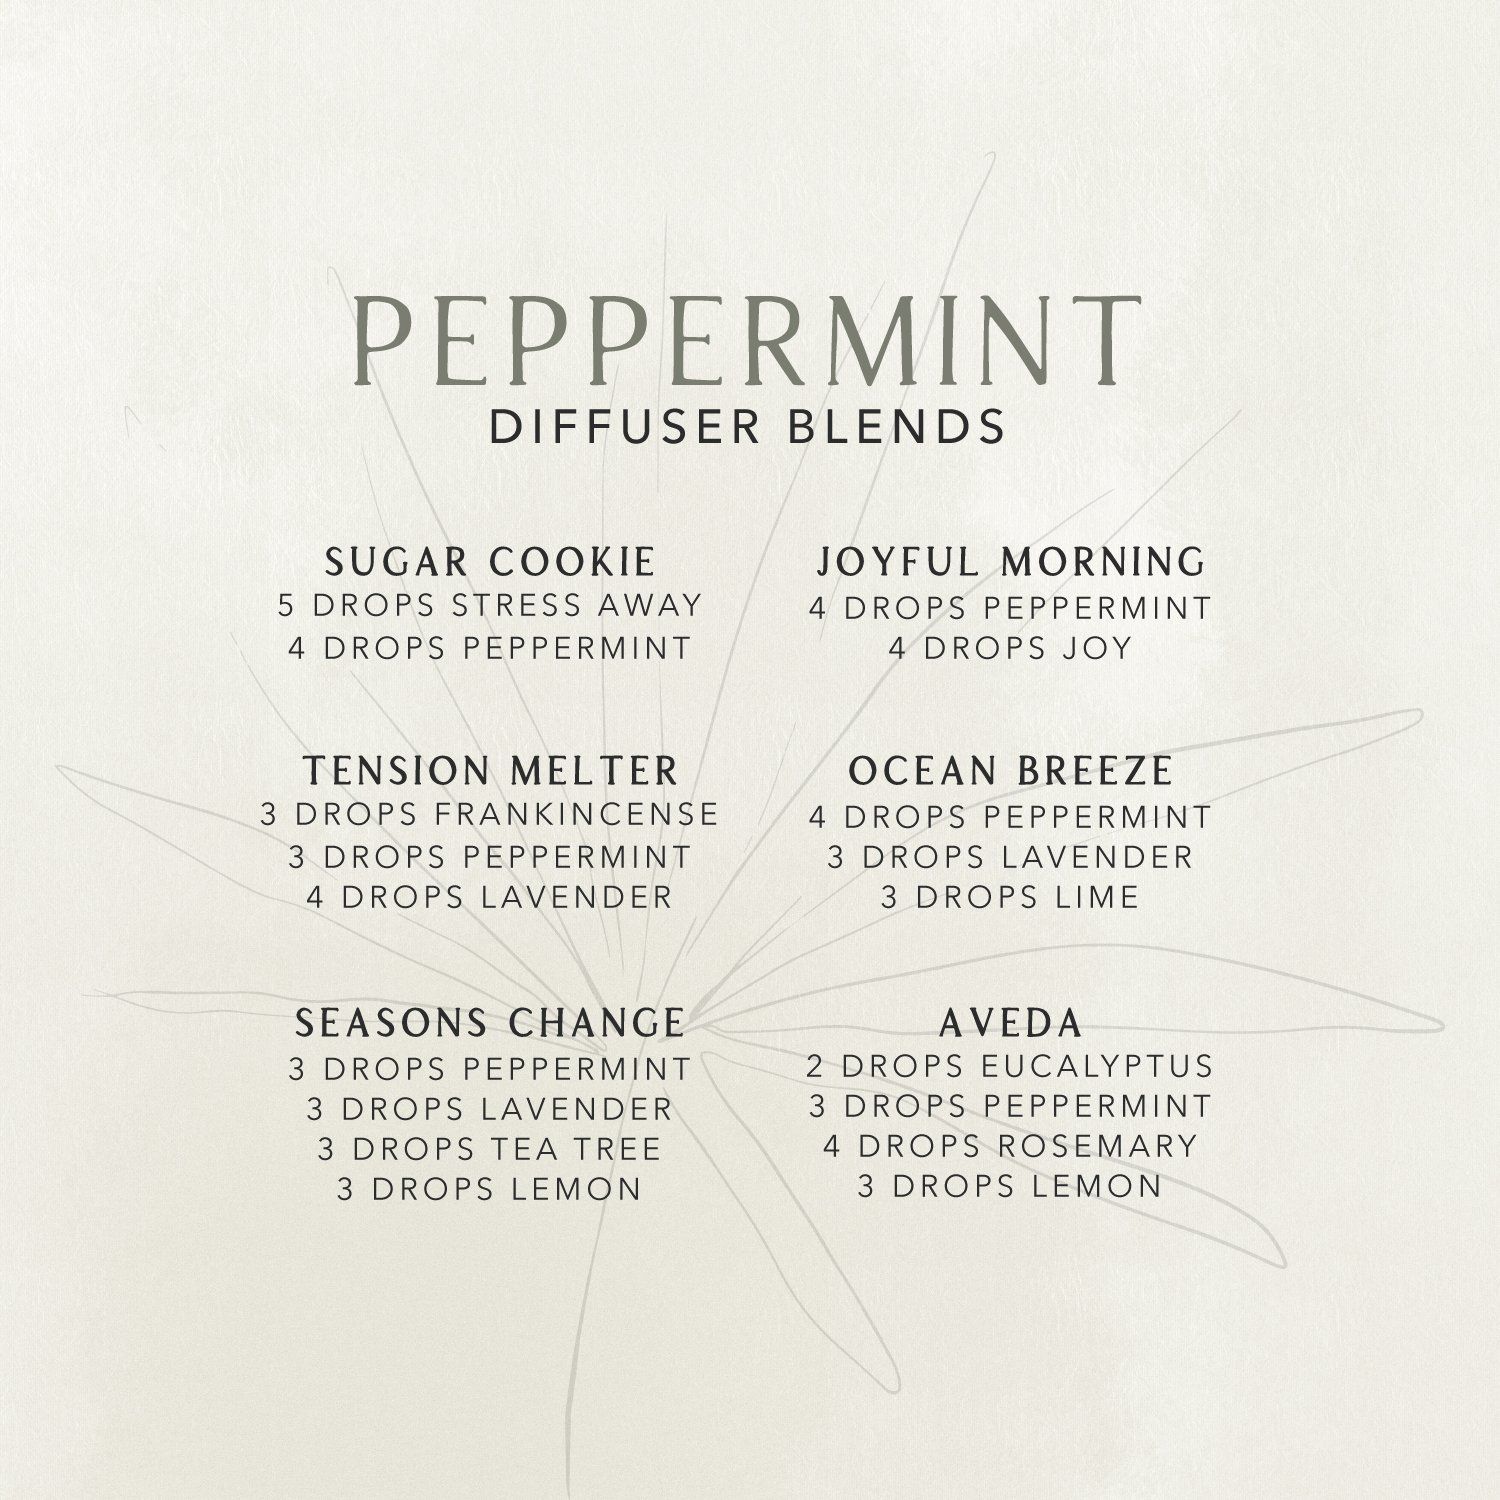 Peppermint Diffuser Blends